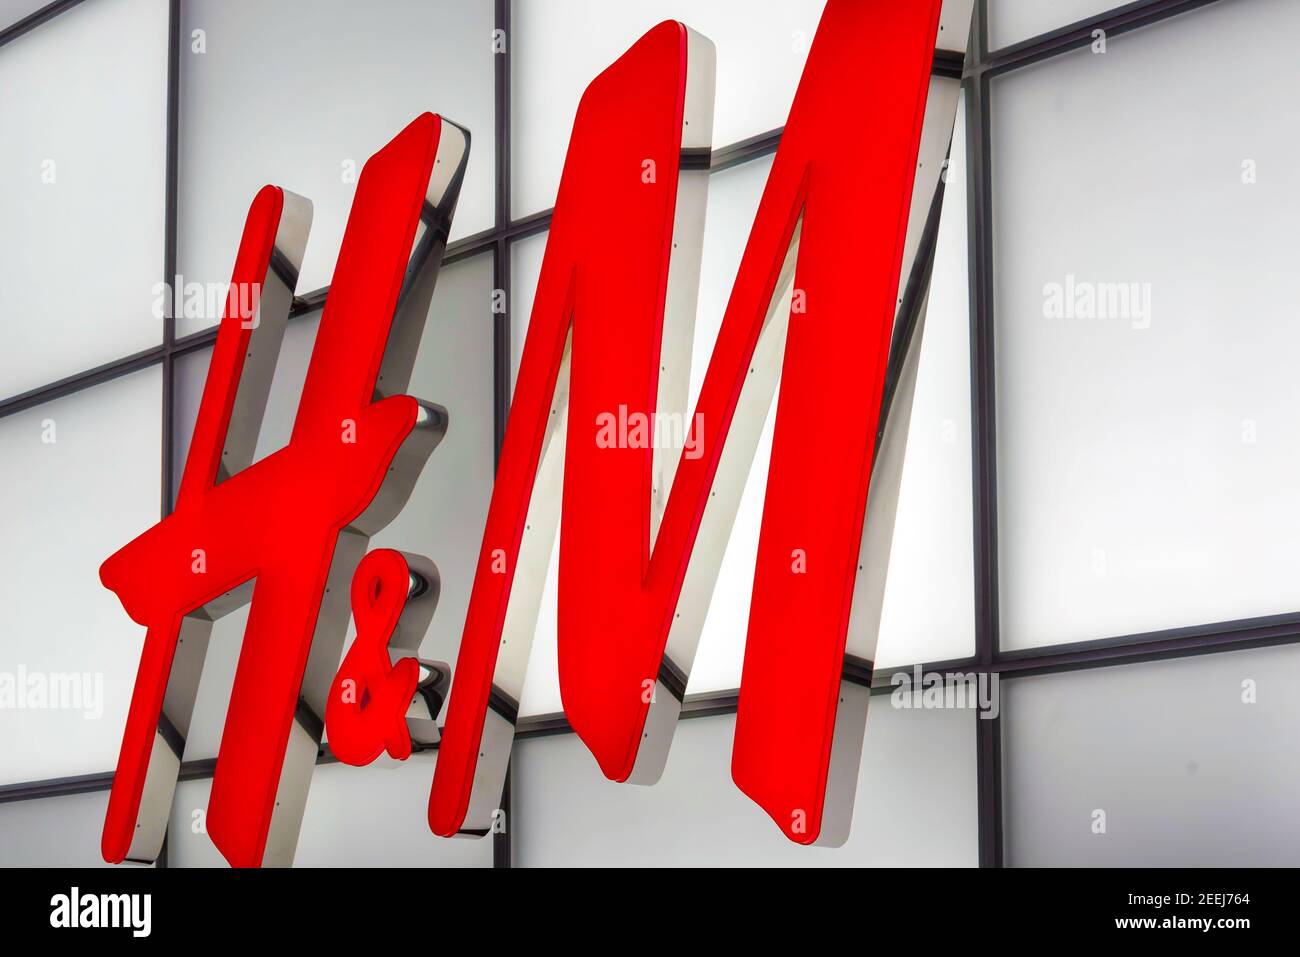 H&M Red Store sign: Ein schwedisches multinationales Einzelhandelsbekleidungsunternehmen, bekannt für seine Fast-Fashion-Kleidung für Männer, Frauen, Jugendliche und Kinder Stockfoto